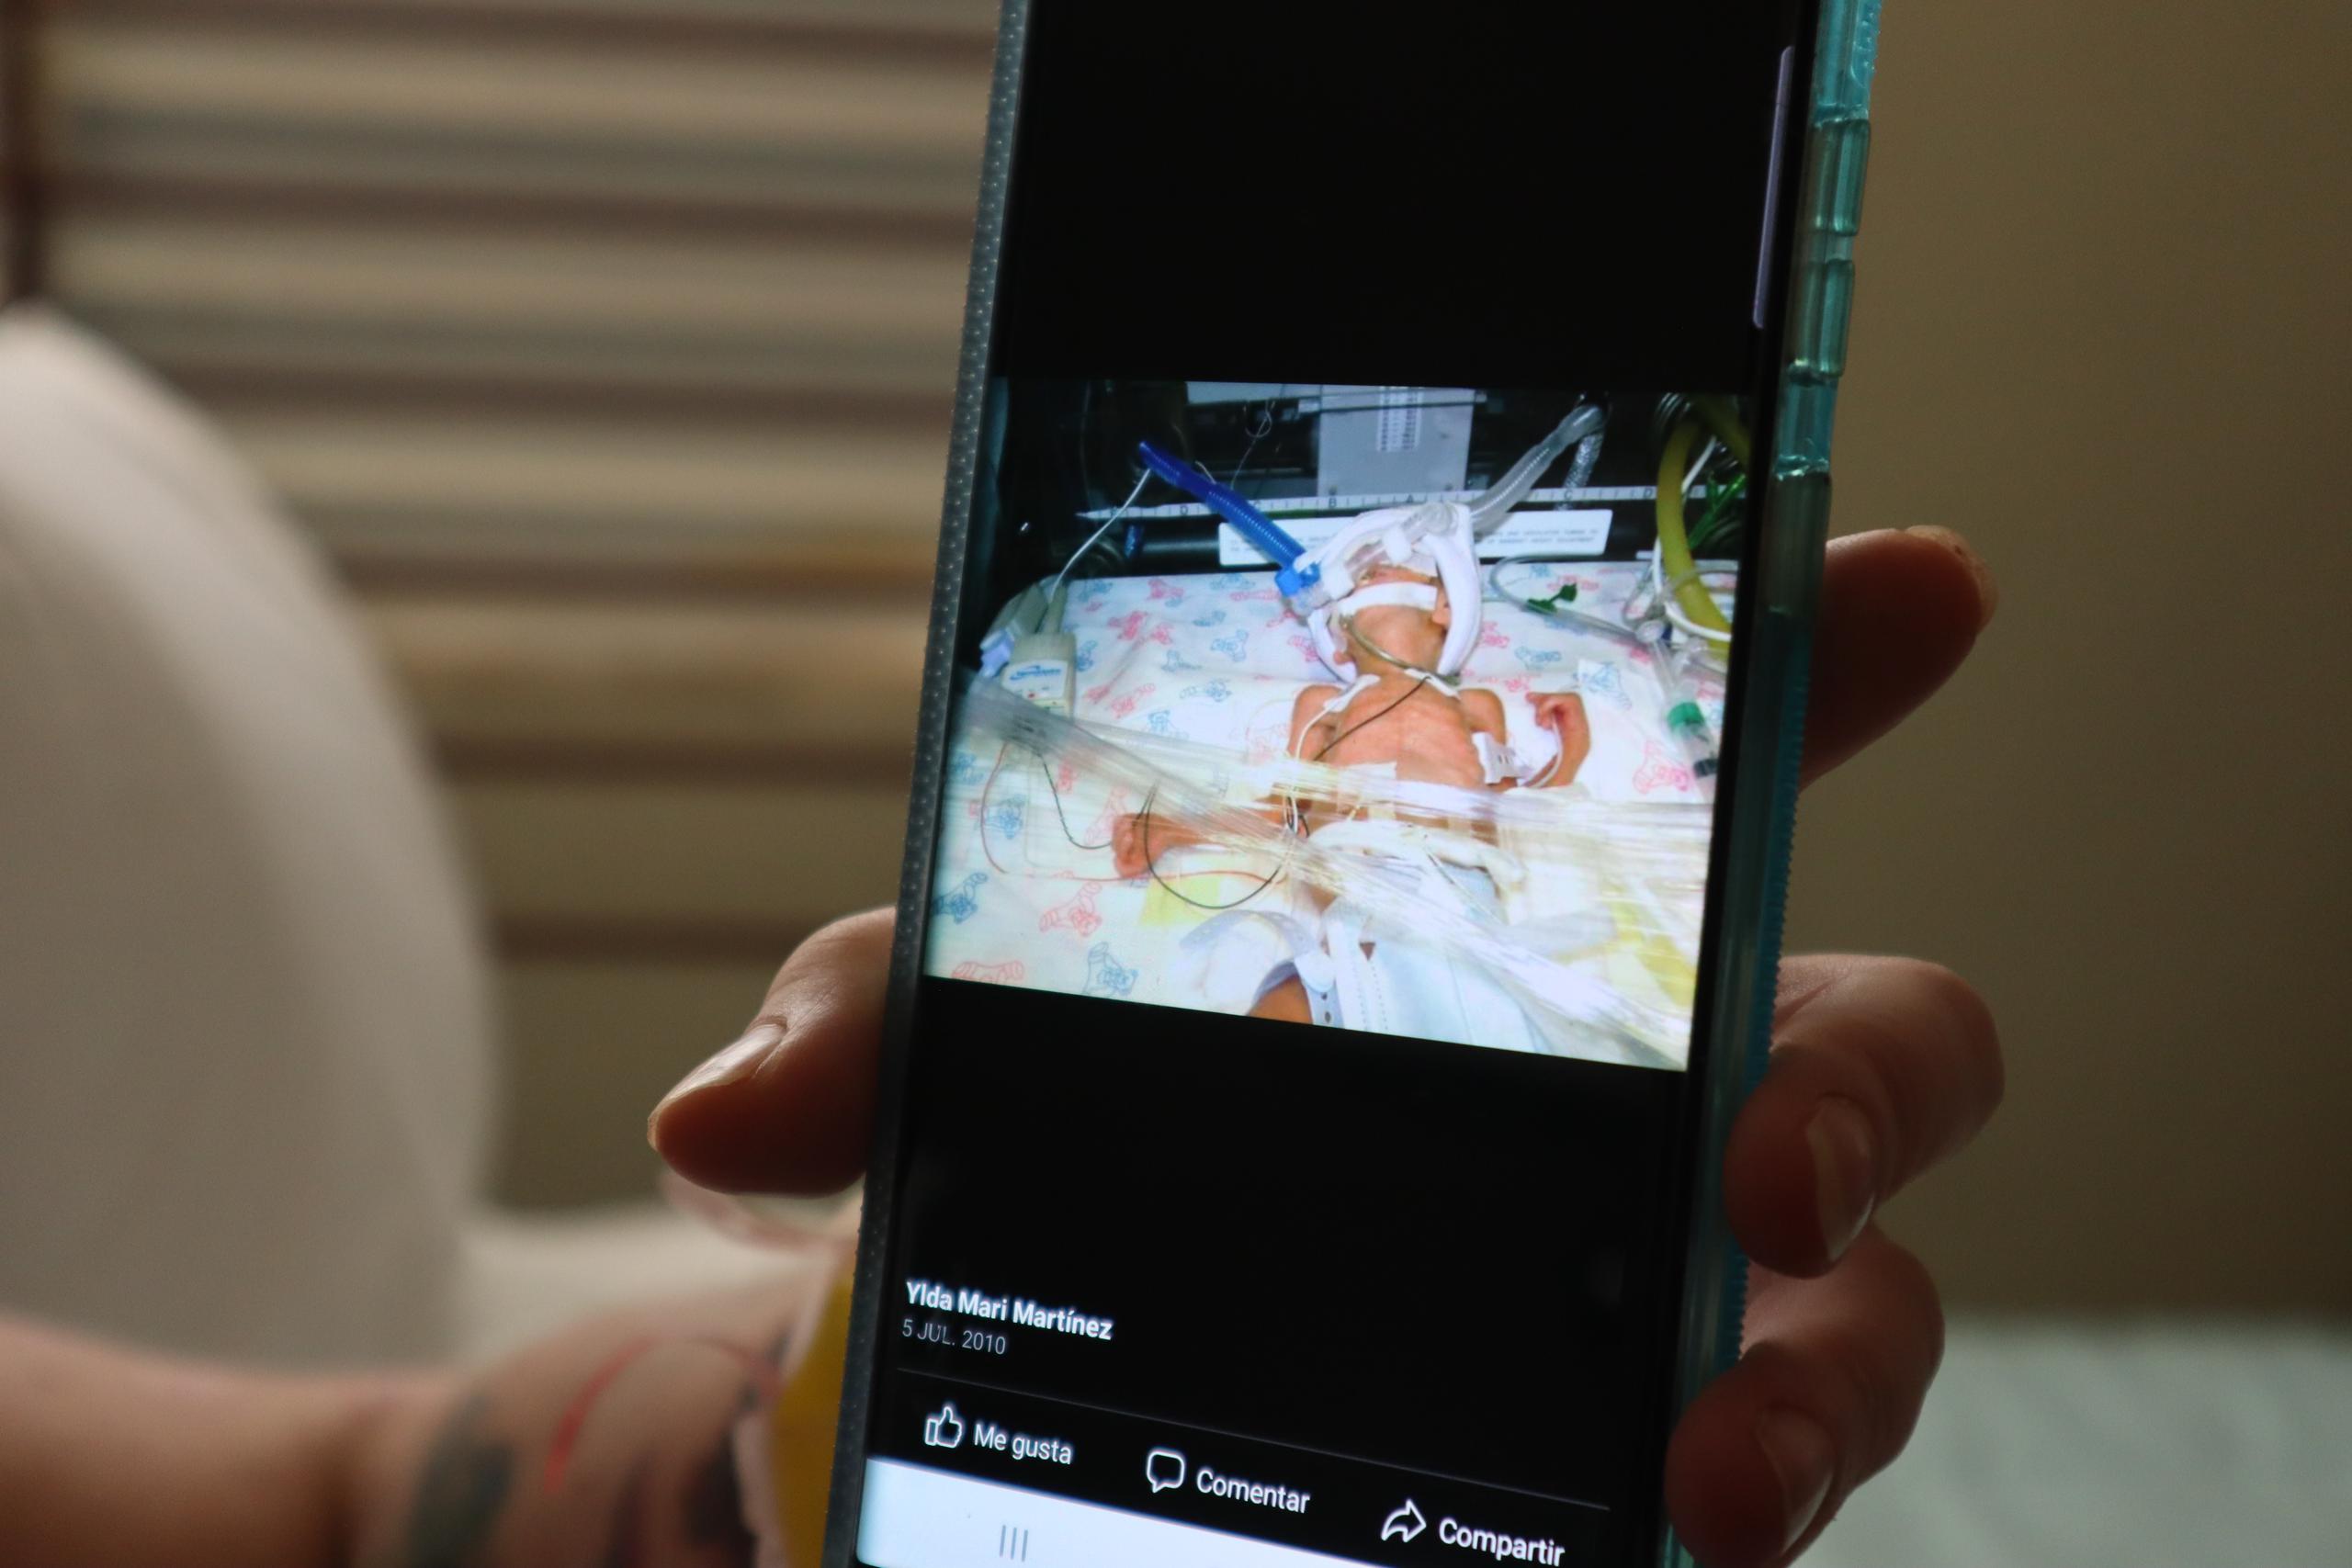 Ylda Martine Rosa muestra la imagen de su hijo, Antony, recién nacido, quien luchó para sobrevivir.